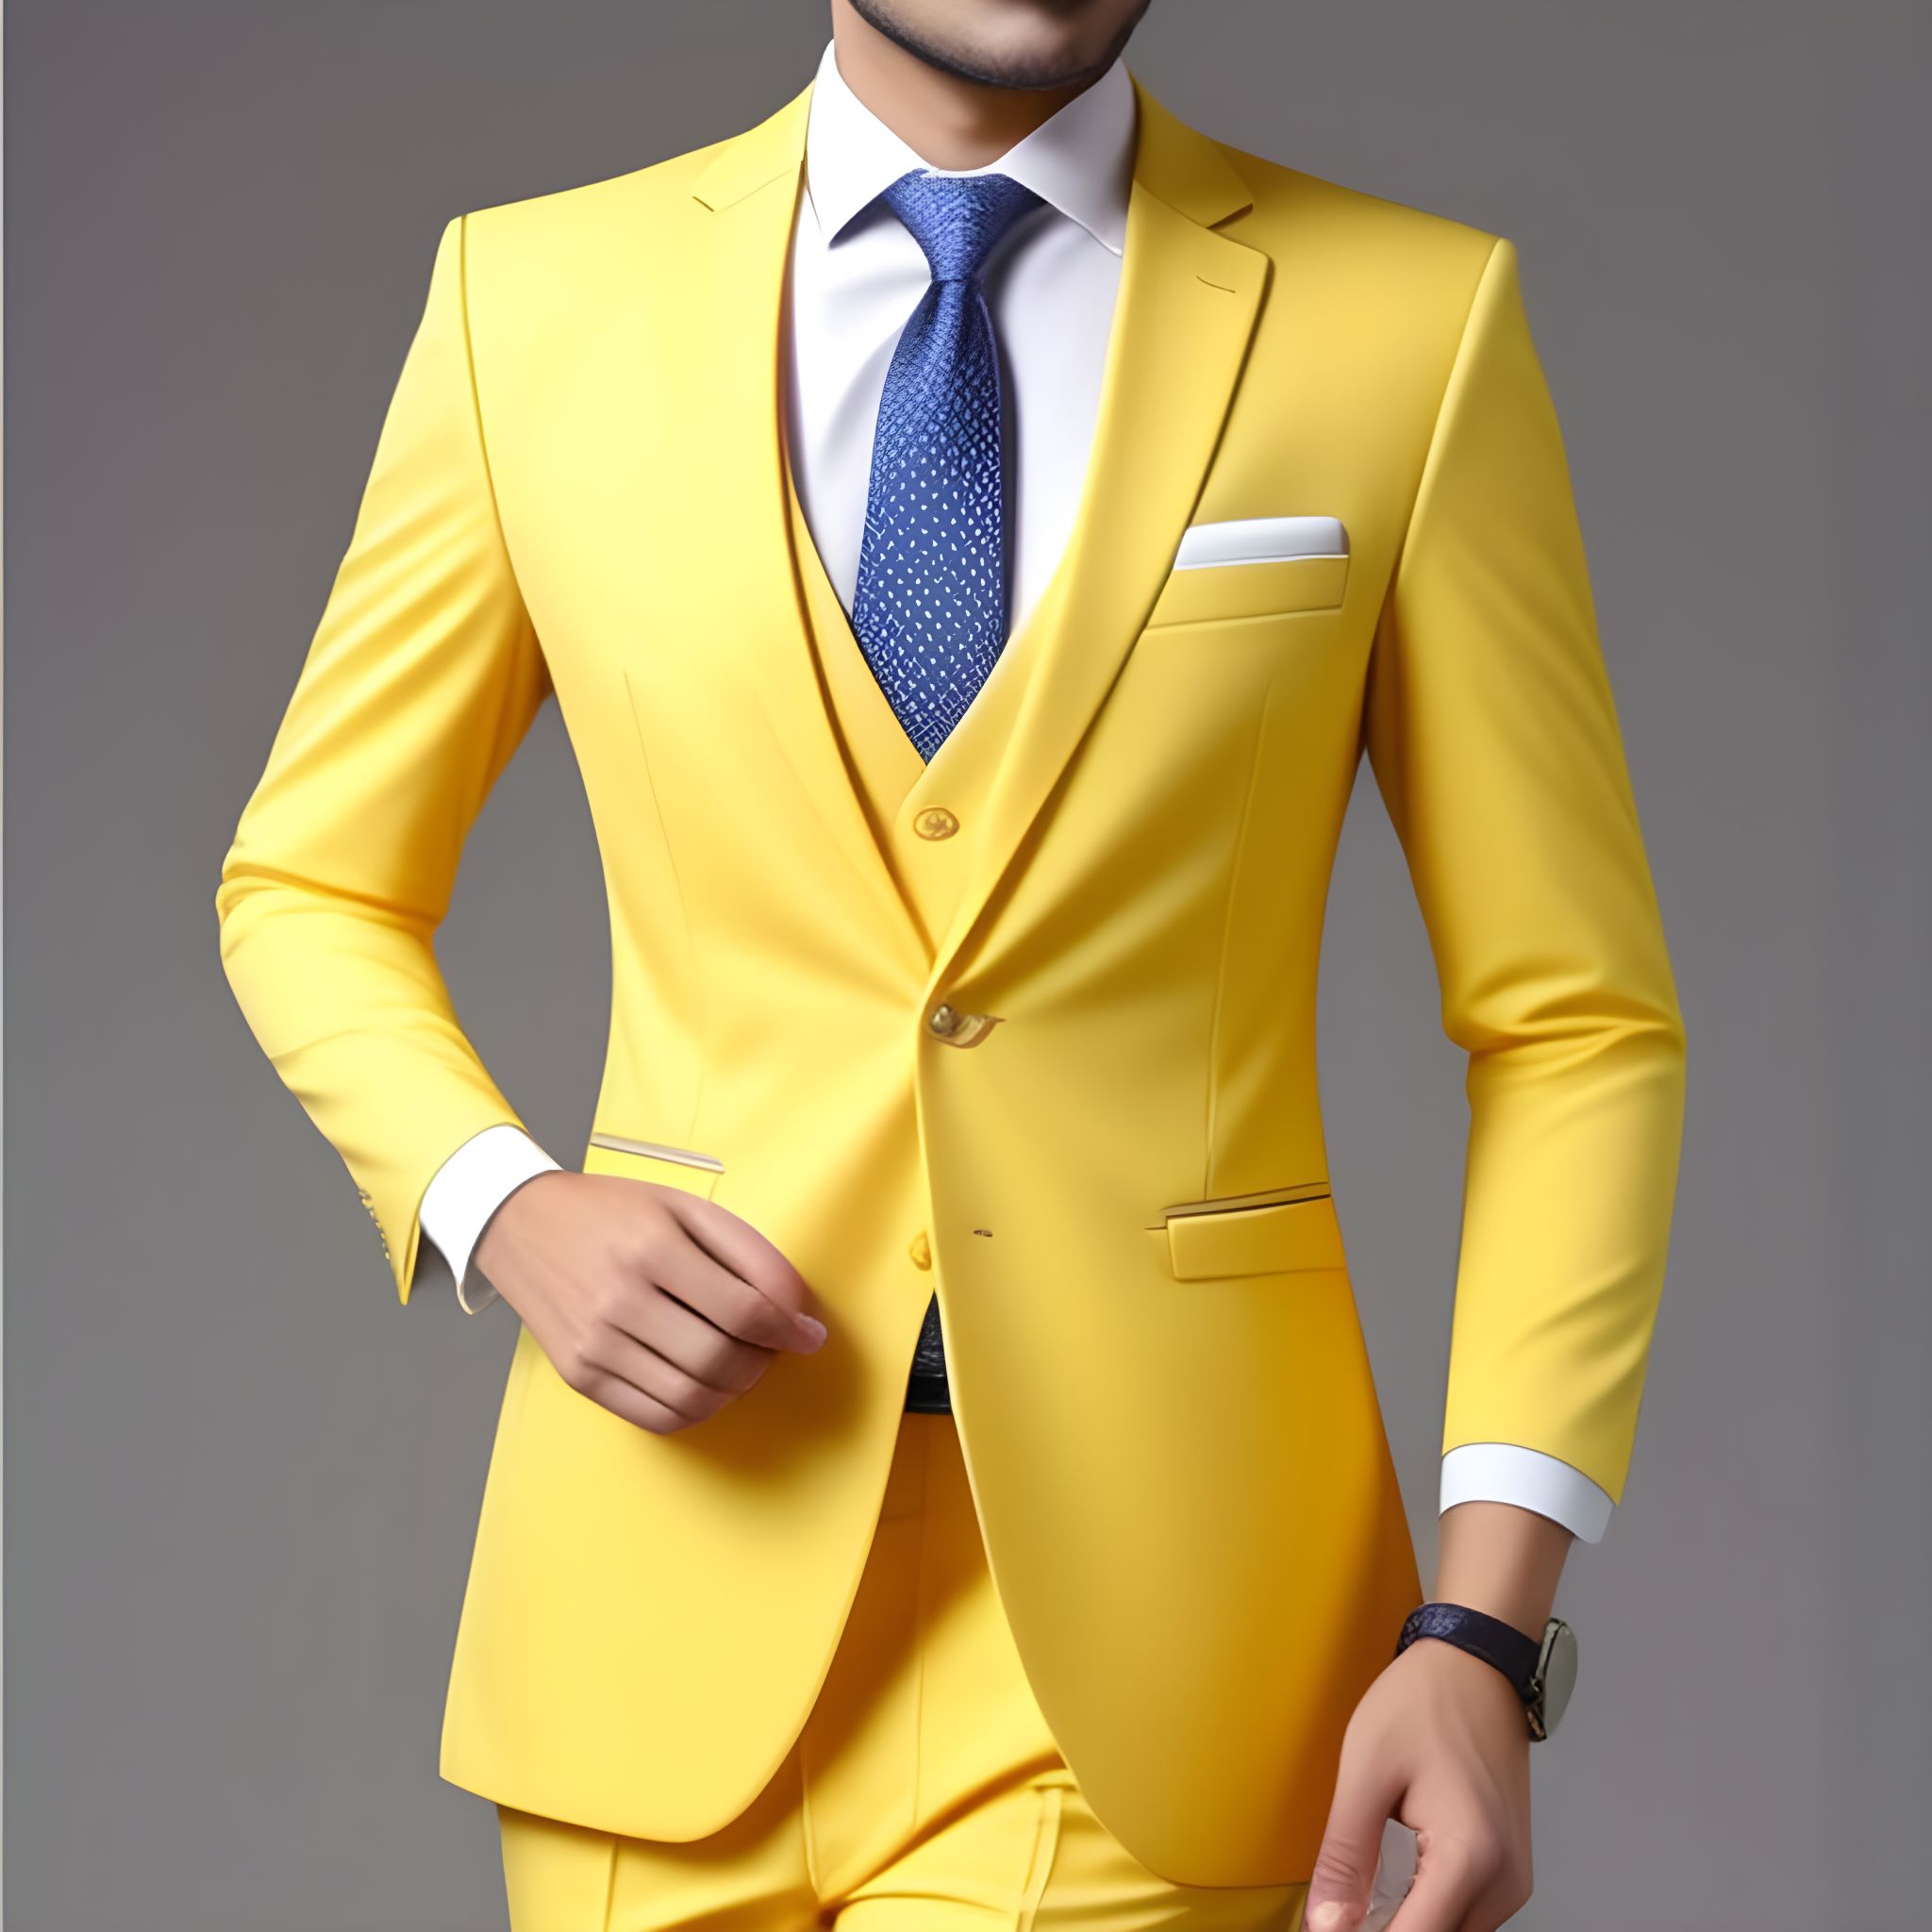 stylish Yellow formal dress